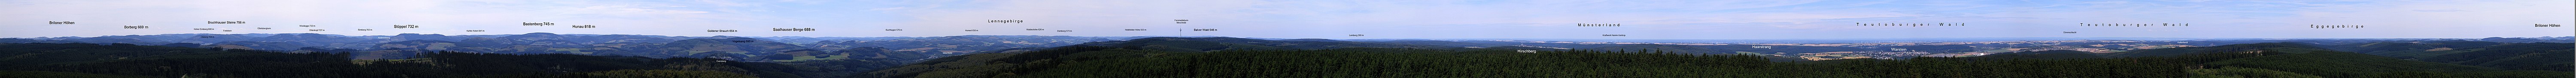 одан әрі Лормеккетурманың панорамалық көрінісі (оның ішінде Сауэрландтың магистралі, орталық Ротаркамм)